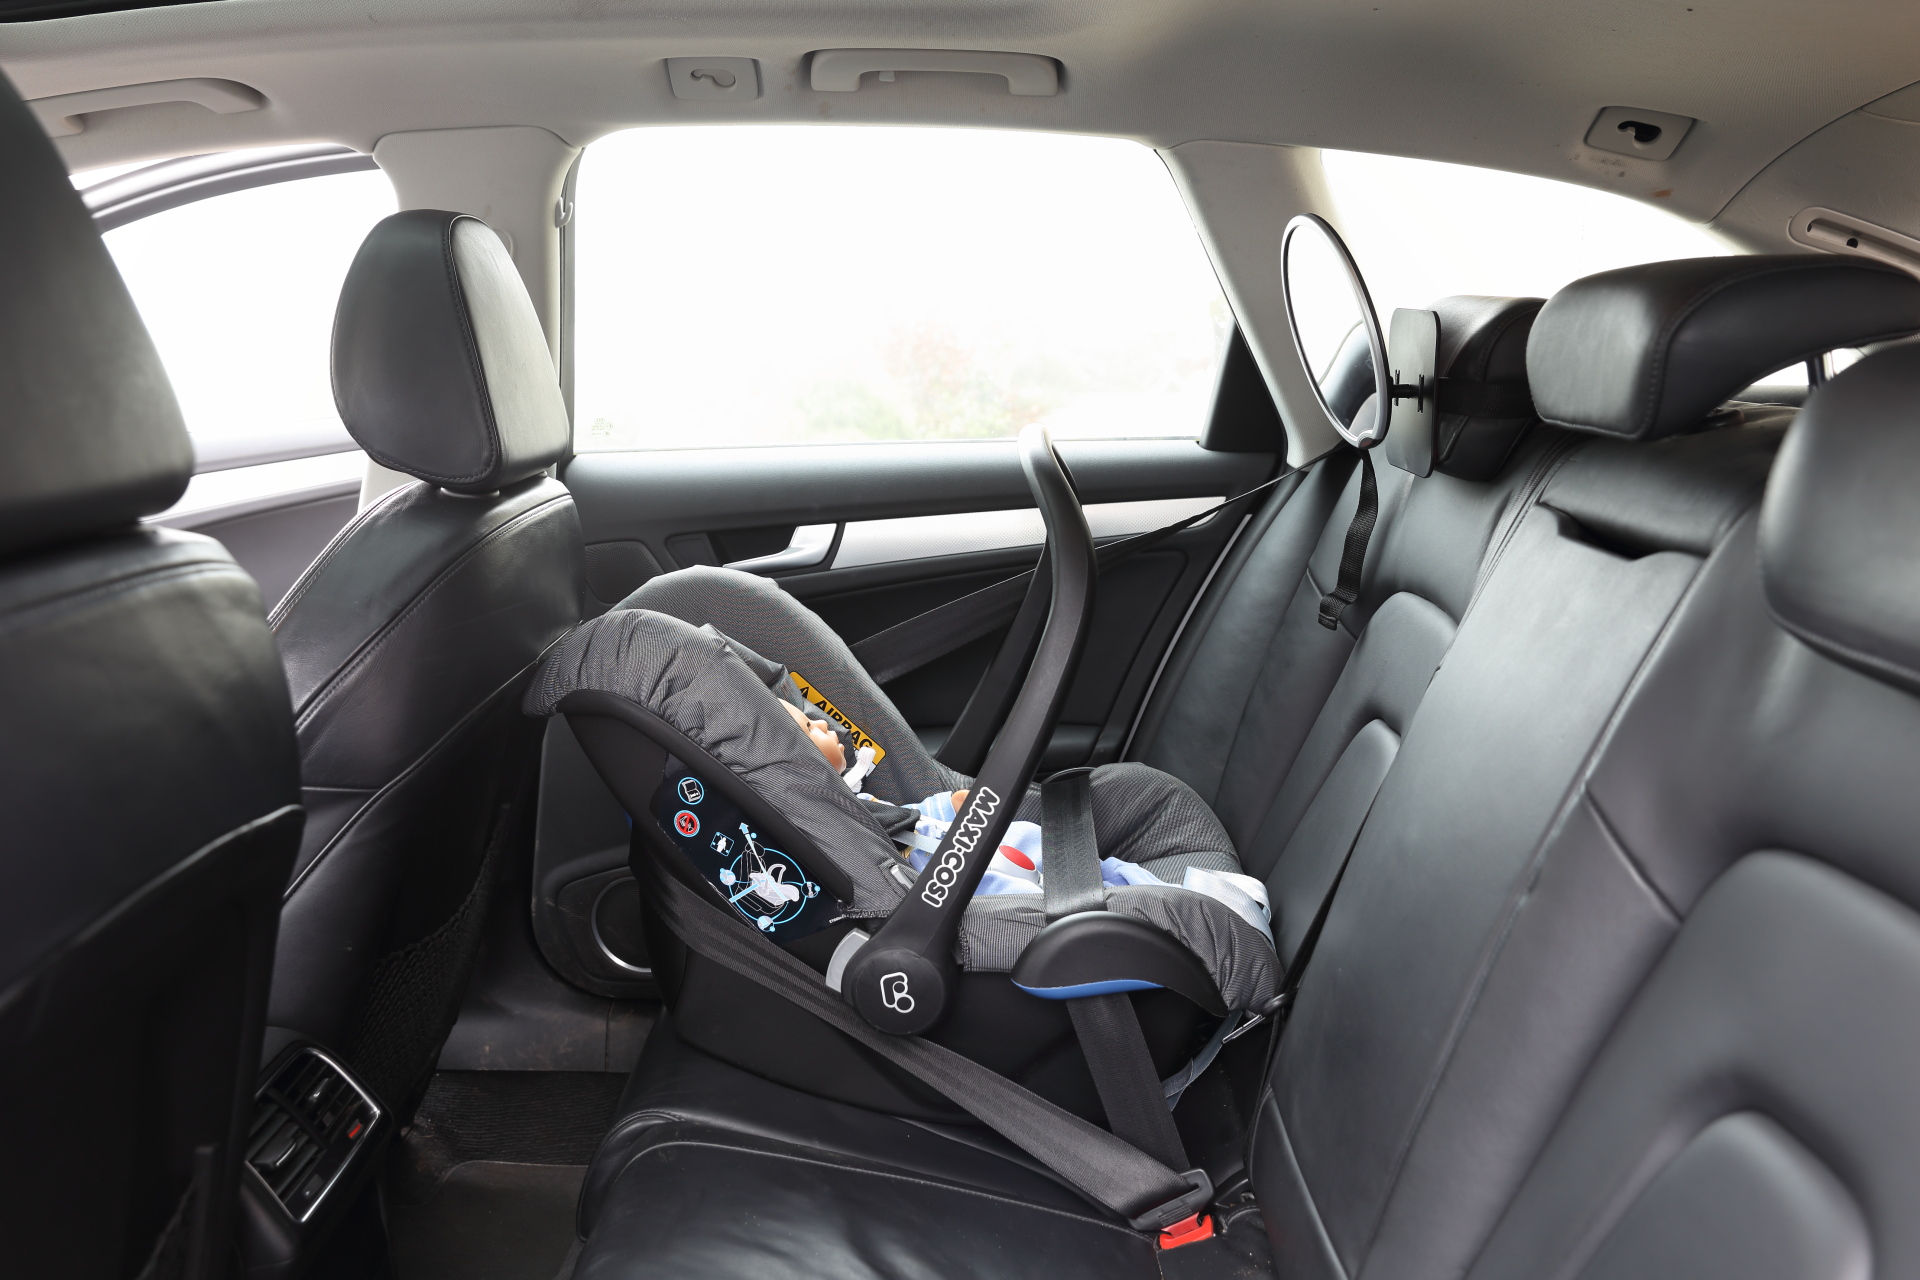 Autospiegel Baby - Wir nutzen einen Spiegel für Babyschale